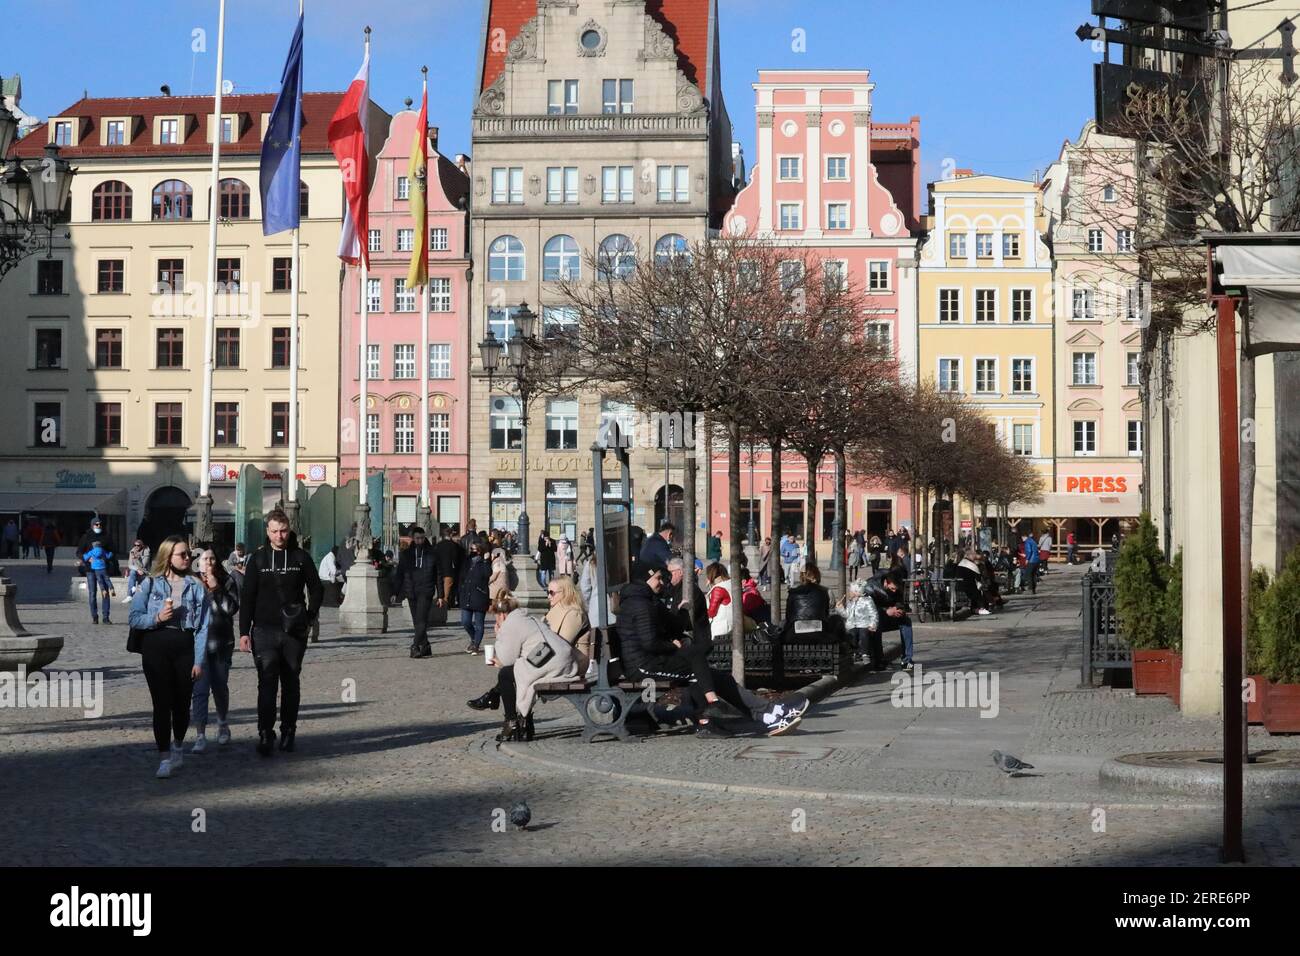 Im niederschlesischen Wroclaw, deutsch Breslau,herrschte am letzten Februar-Wochenende bei frühlingshaften Temperaturen, trotz Corona Pandemie, reges Stock Photo